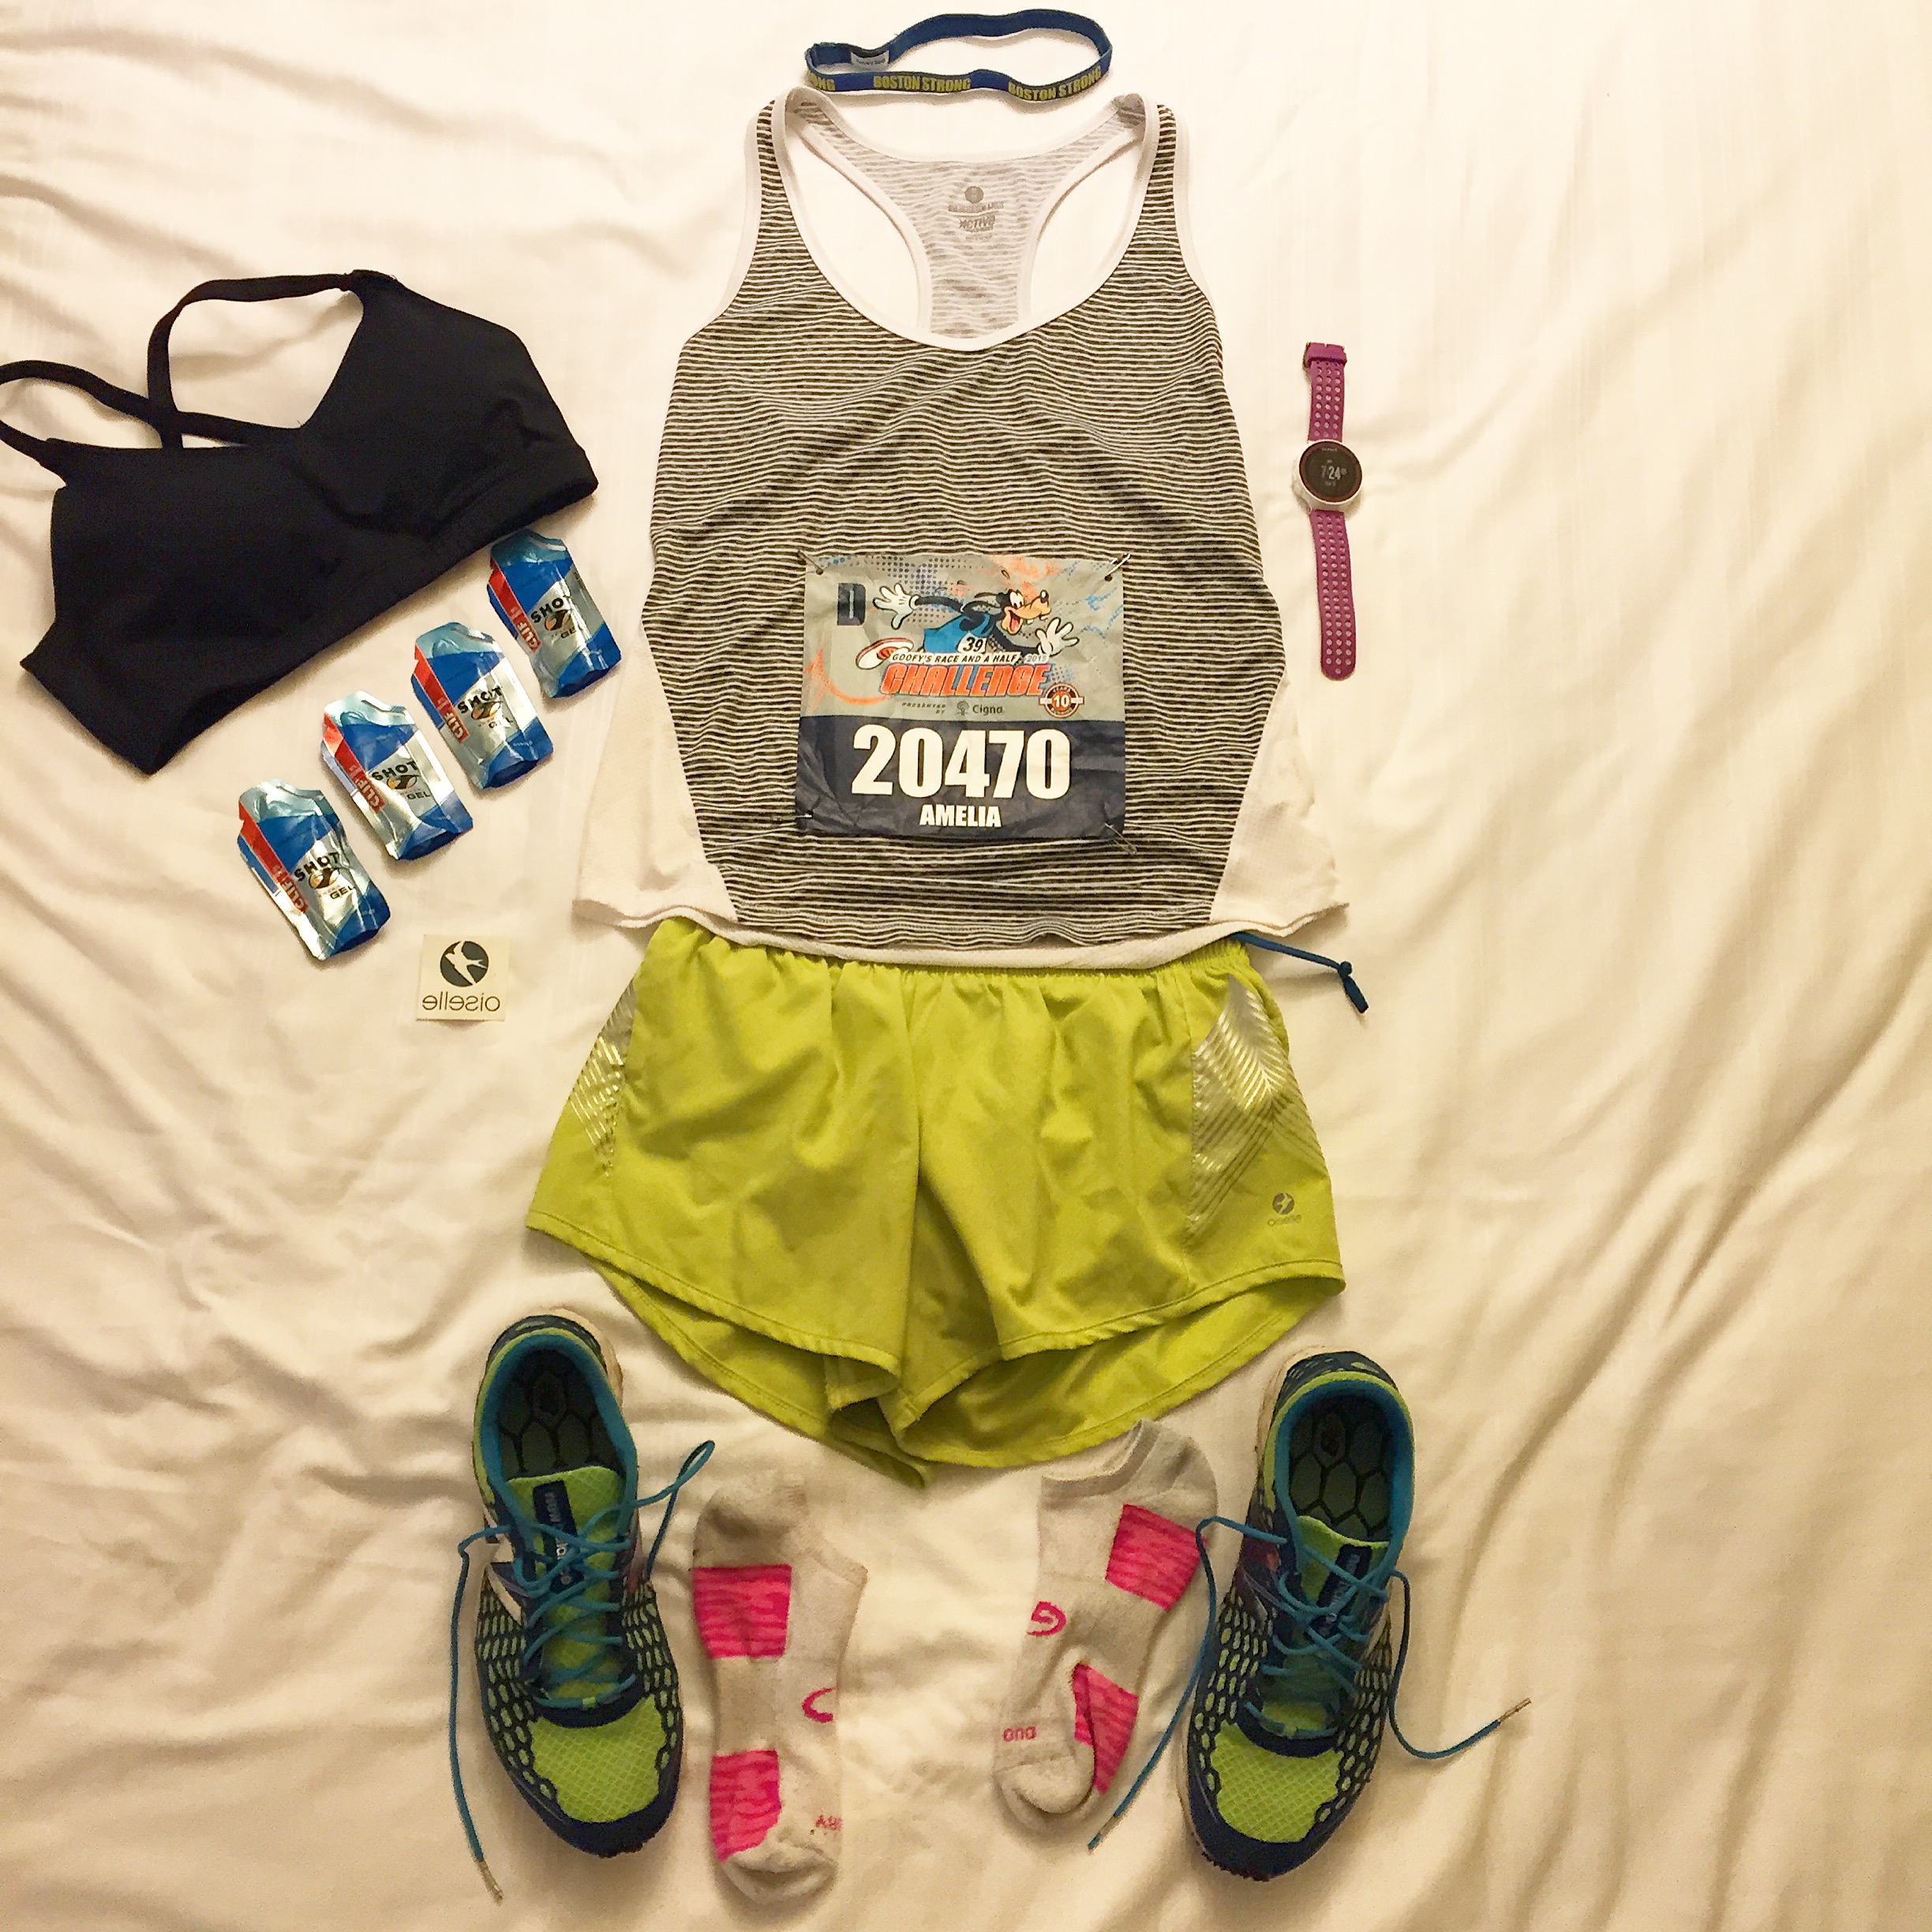 Marathon outfit